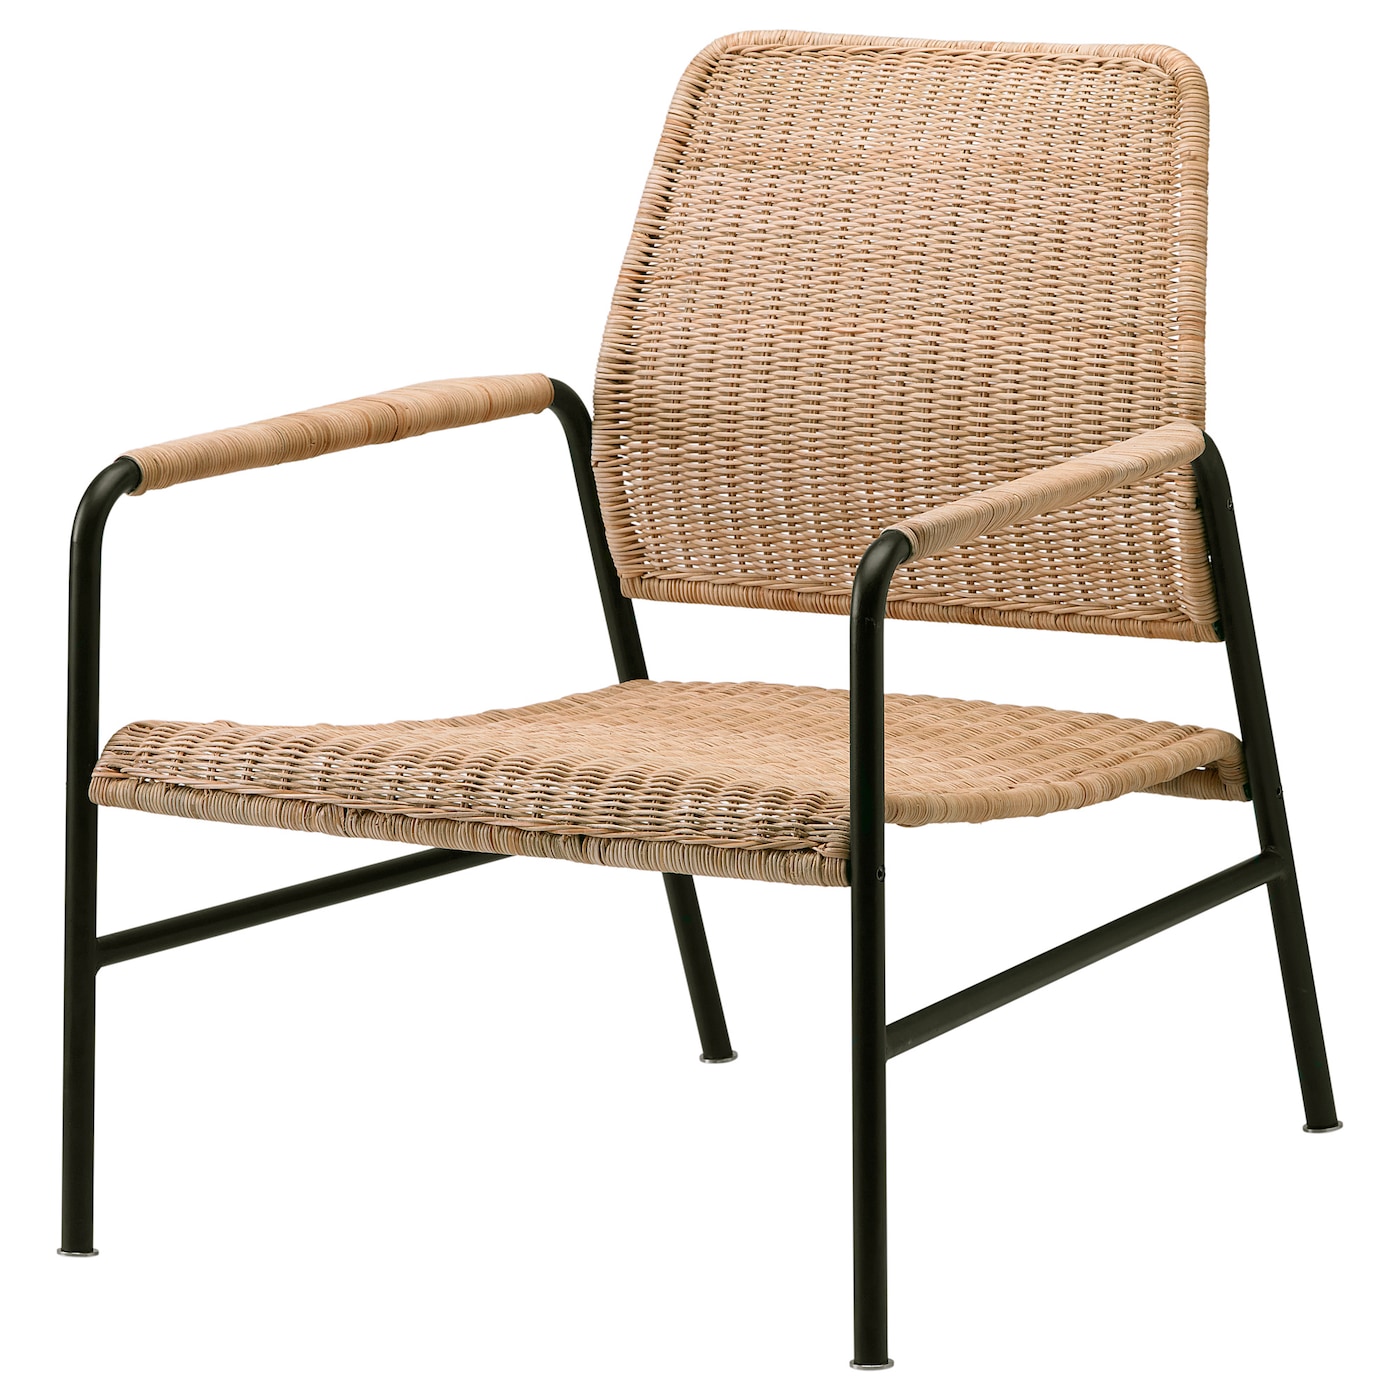 Кресло садовое - IKEA ULRIKSBERG, 76х67 см, коричневый, УЛЬРИКСБЕРГ ИКЕА